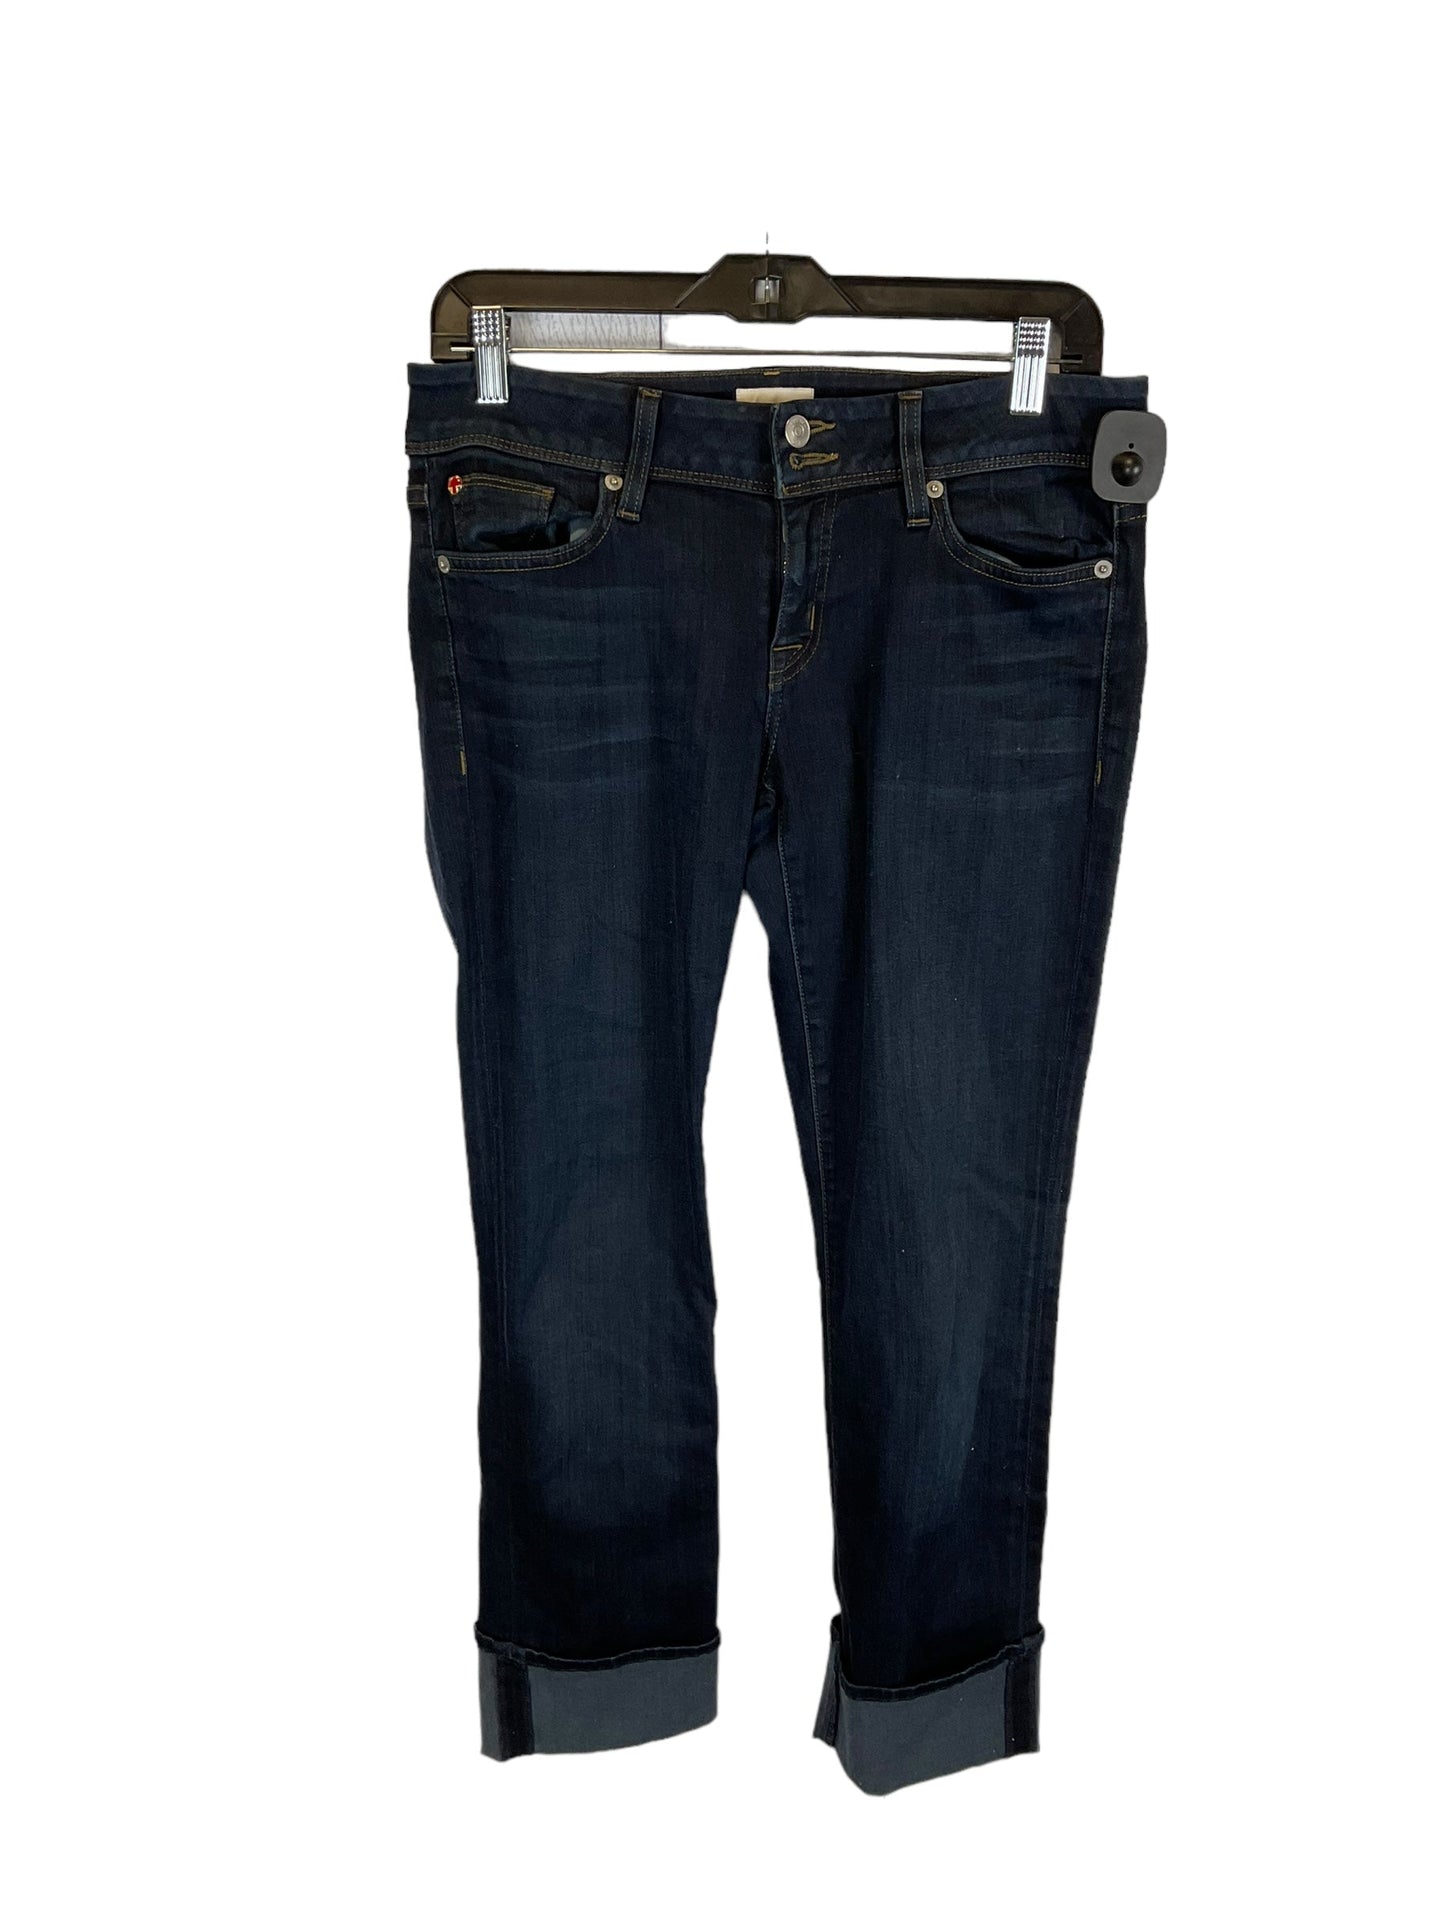 Blue Denim Pants Designer Hudson, Size 6